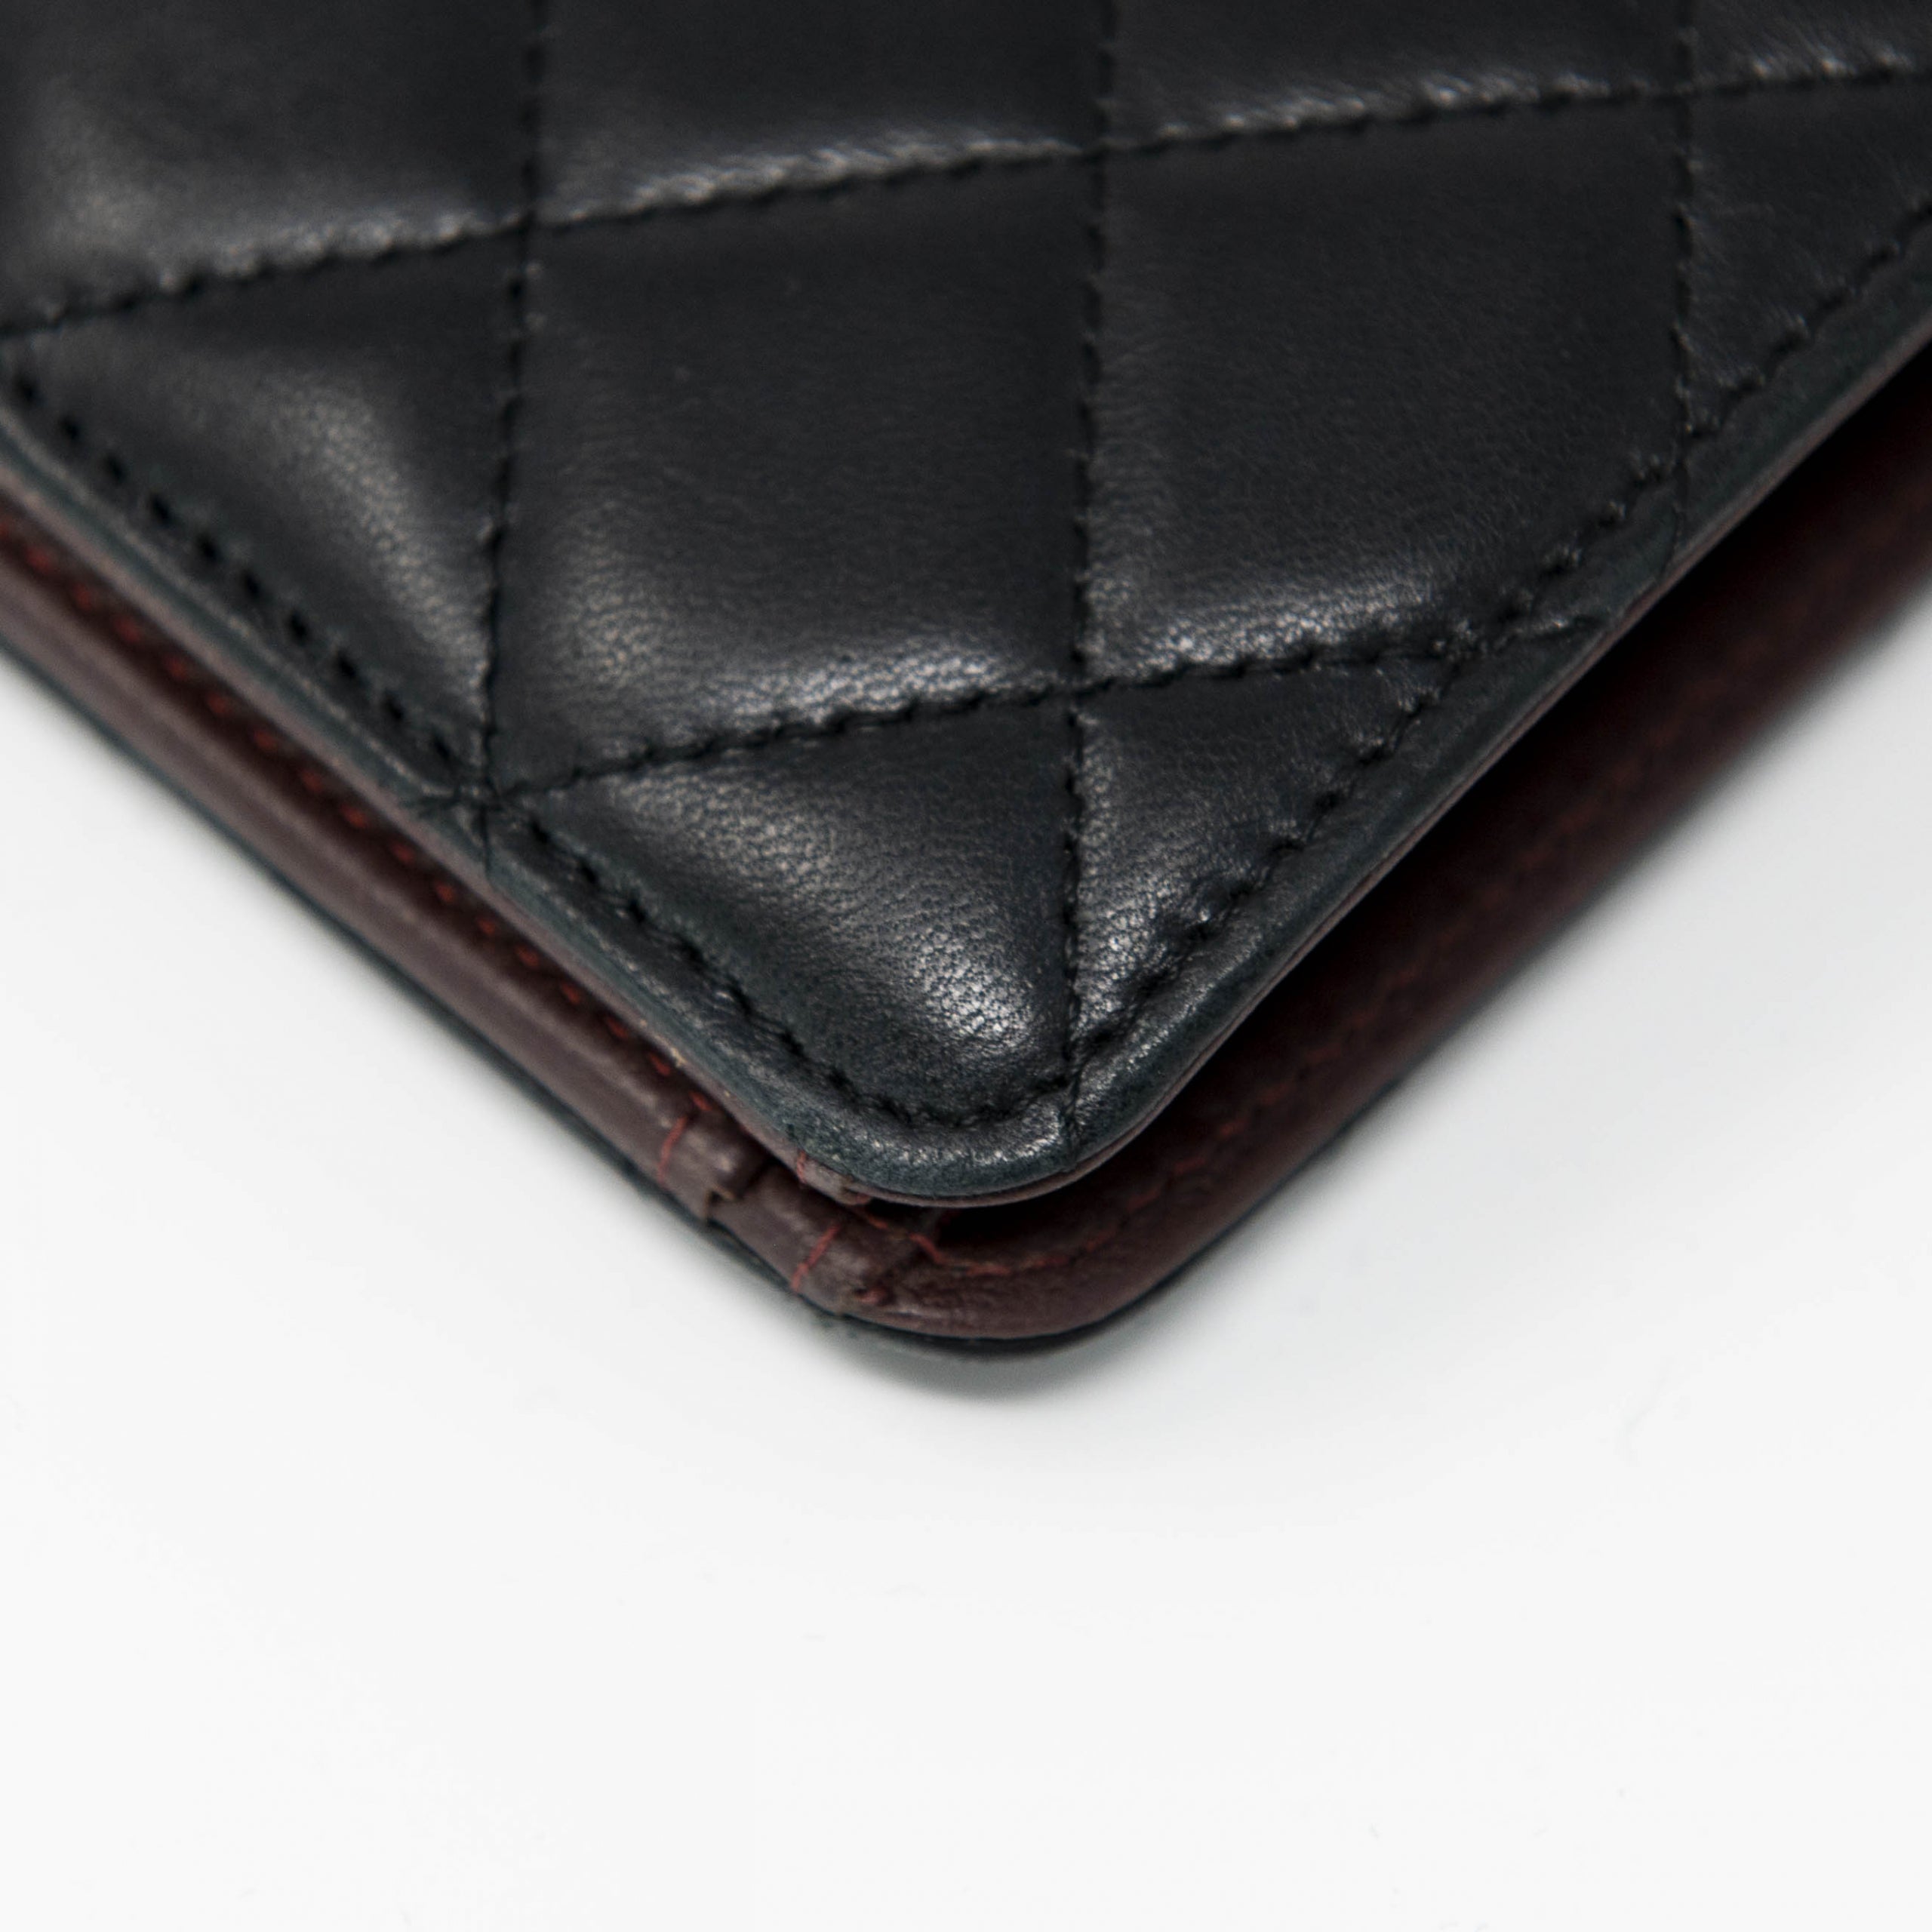 Chanel Black Lambskin Long Flap Wallet